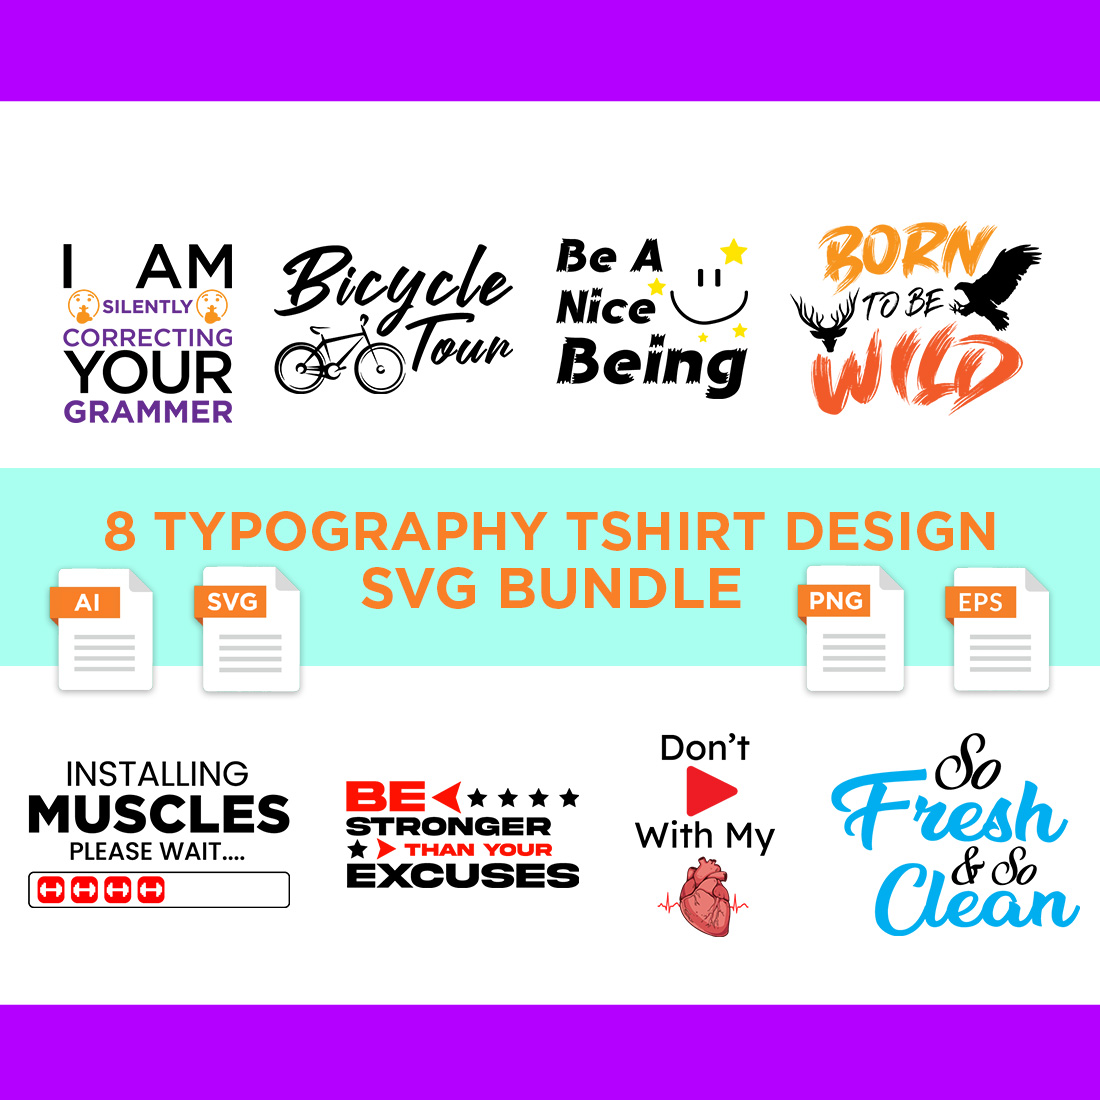 Typography Tshirt Design Bundle, Best Selling Designer Bulk Tshirts, Motivational Trendy PNG Designs cover image.